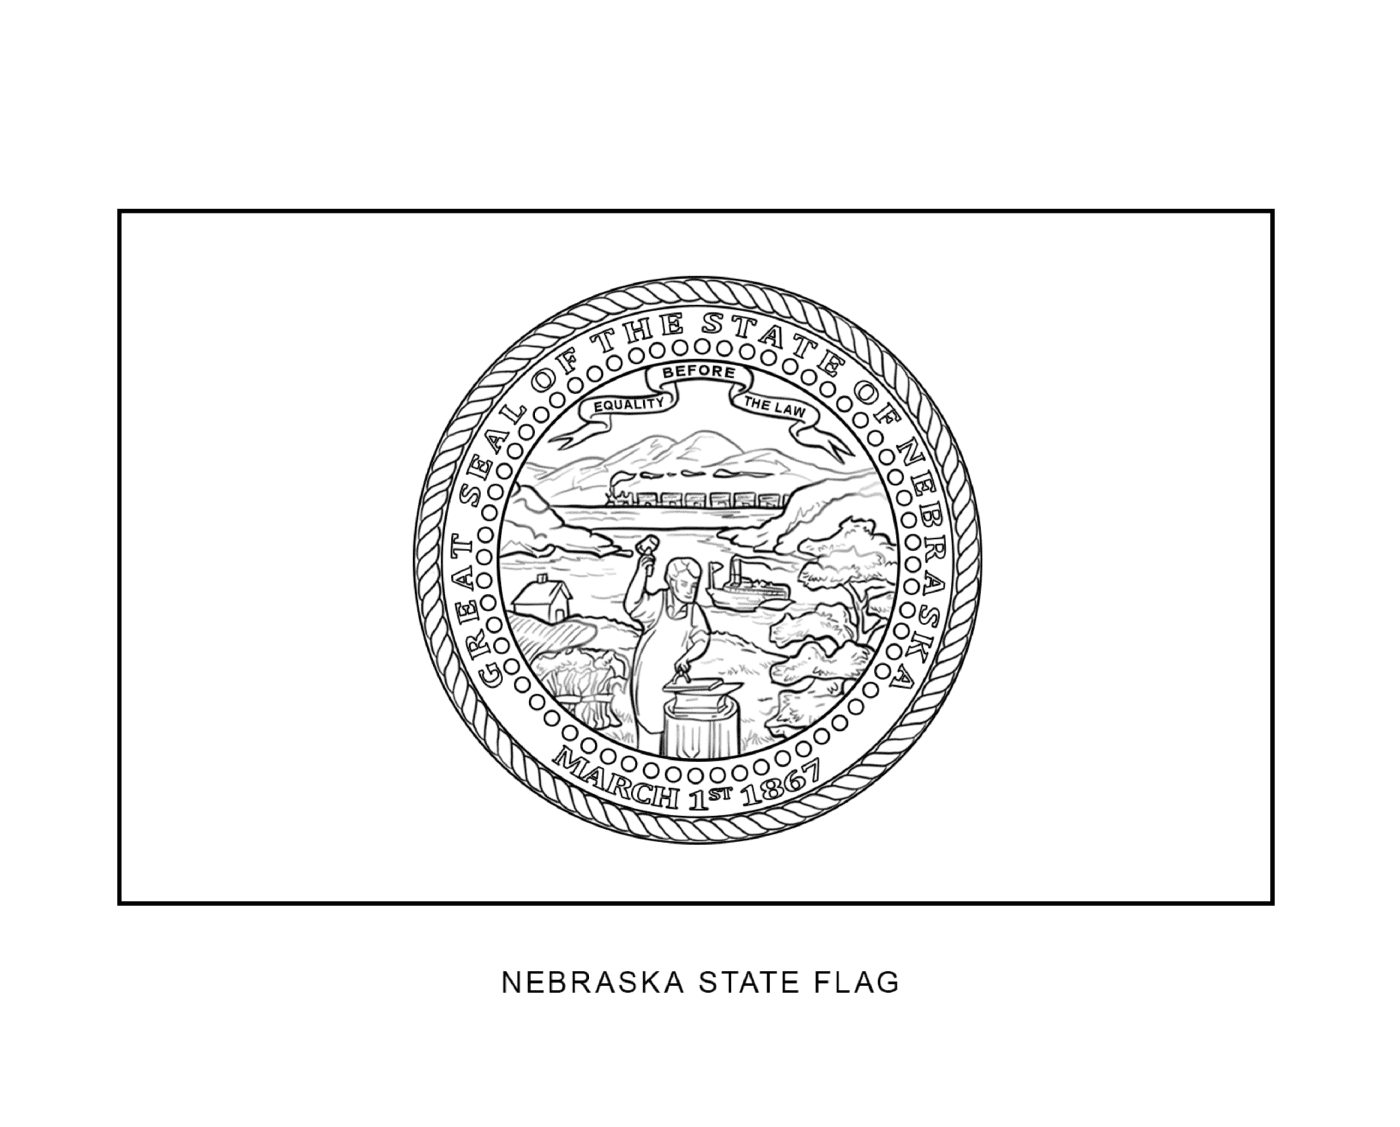  Флаг государства Небраска в черно-белом цвете 